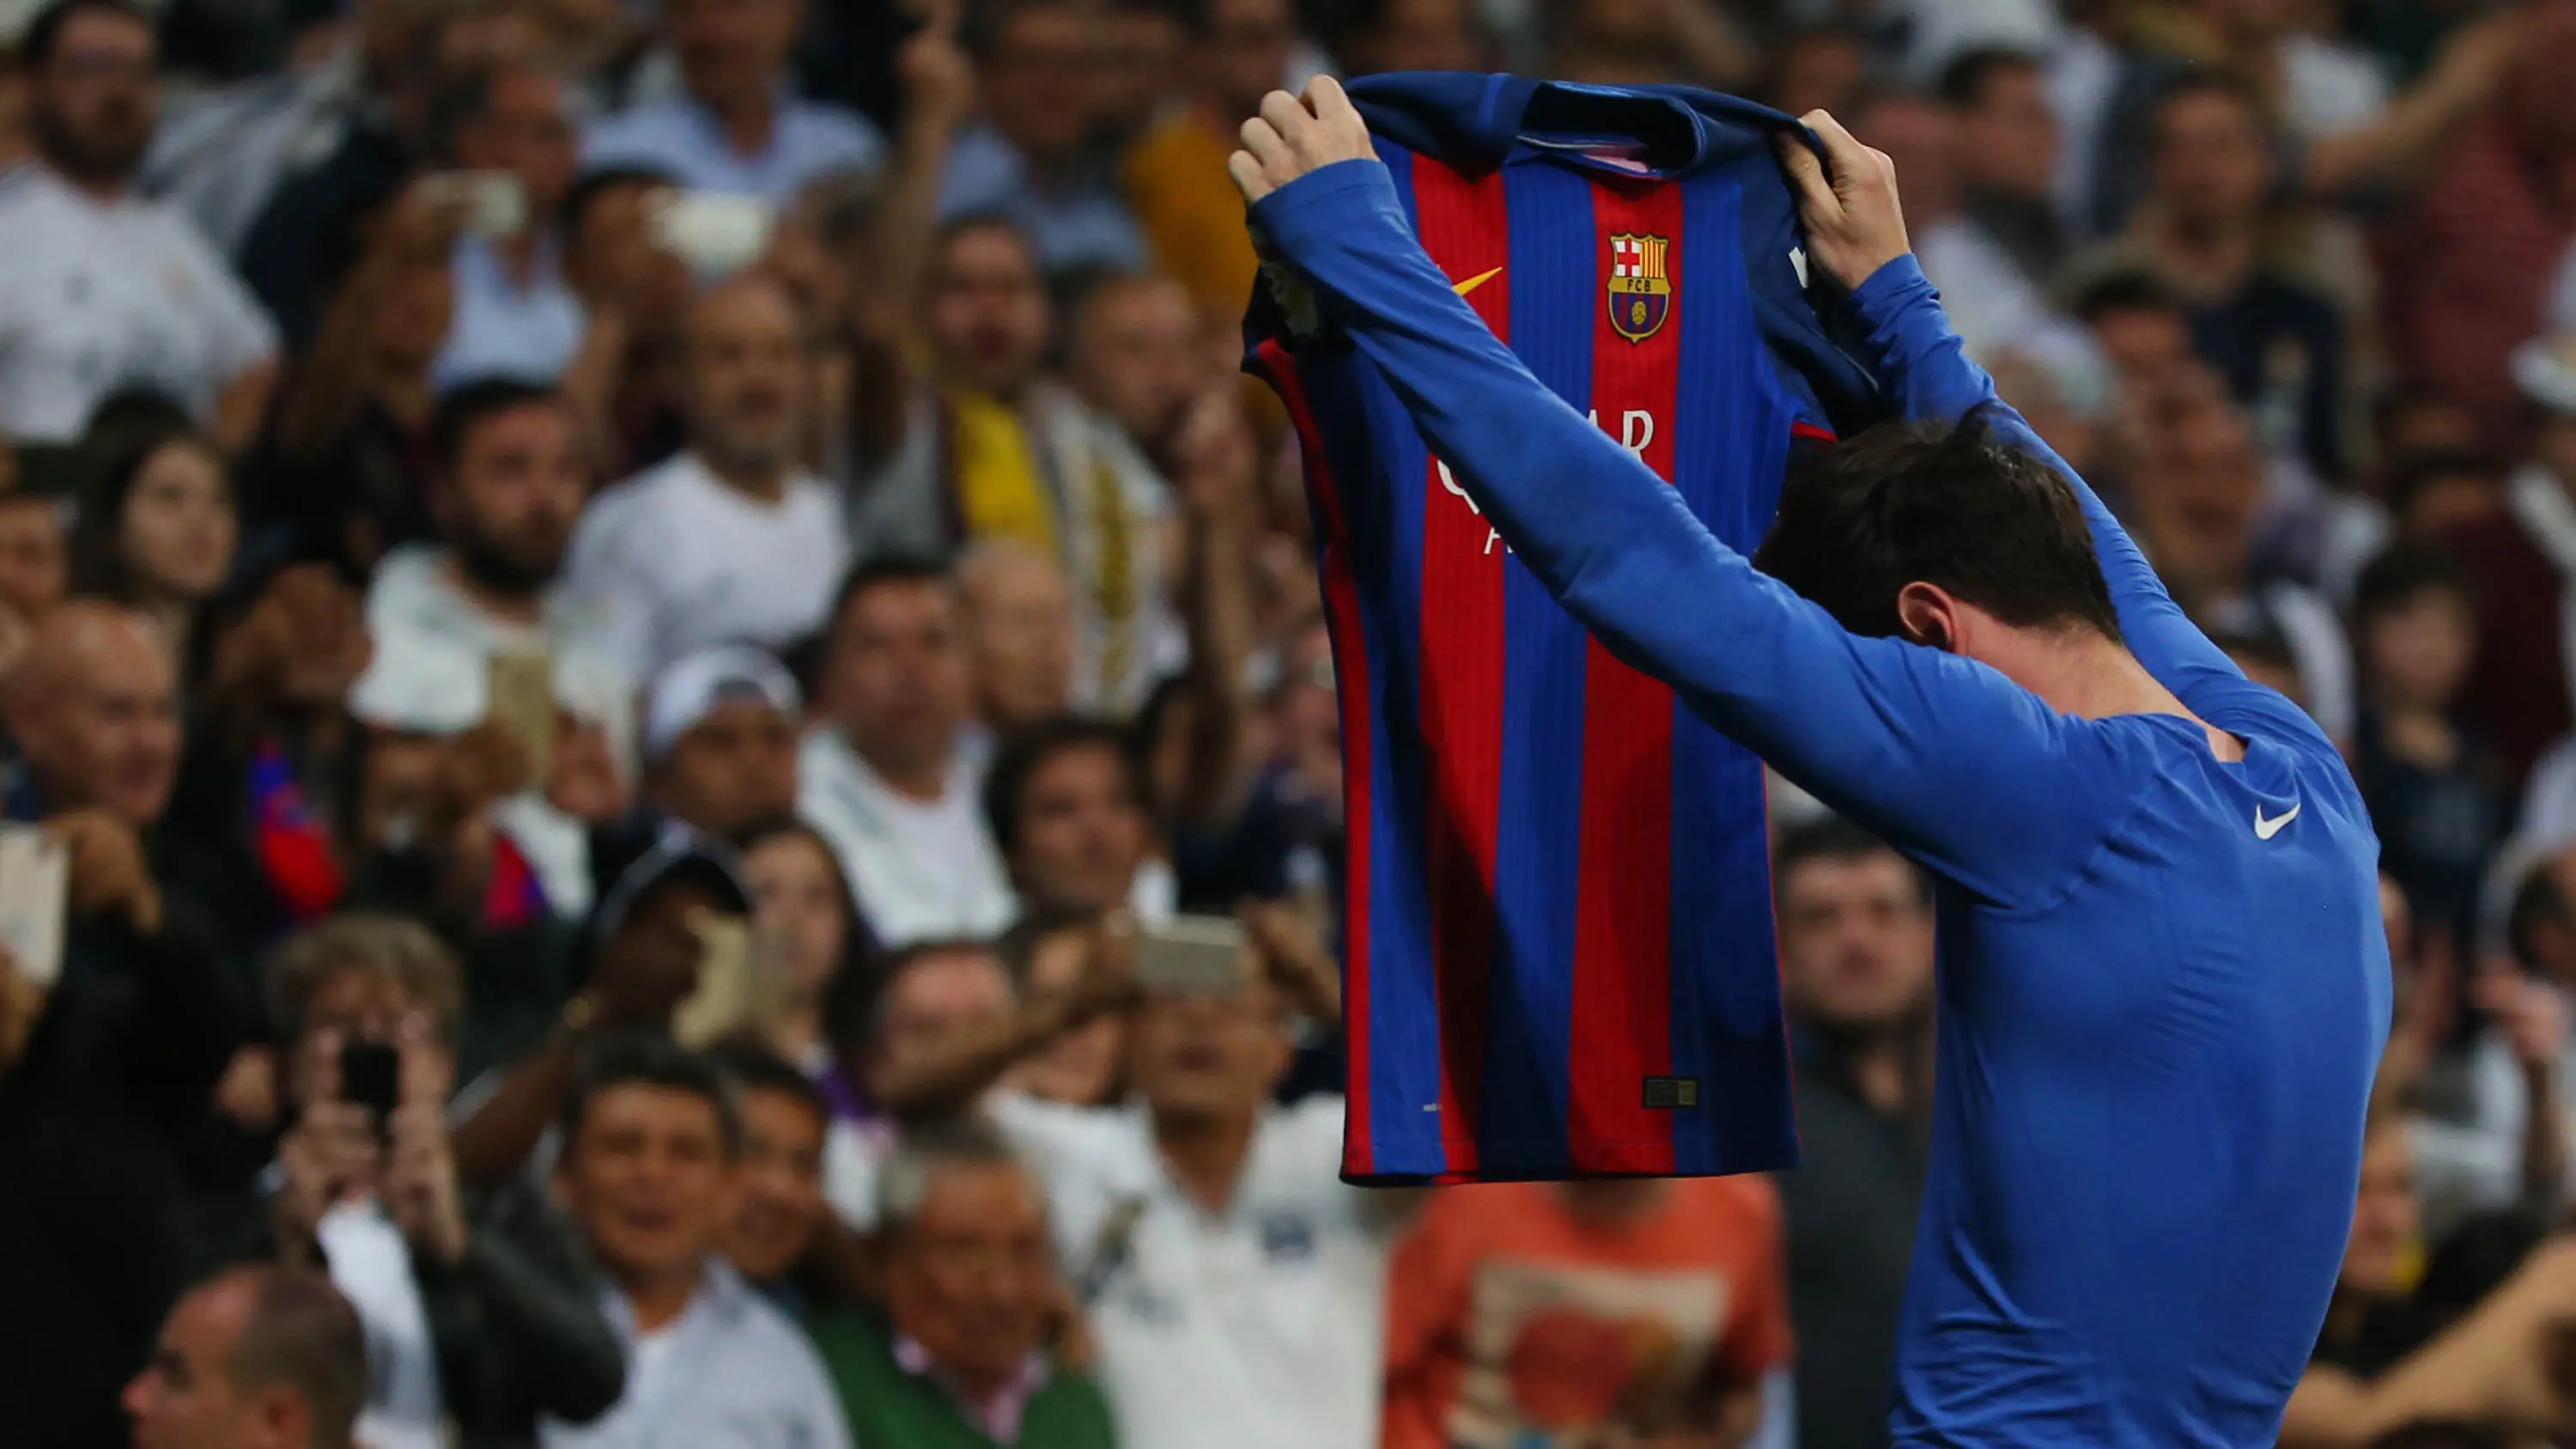 Lionel Messi membuka baju usai membobol gawang Real Madrid pada laga La Liga musim 2016/2017. (Reuters/Stringer)